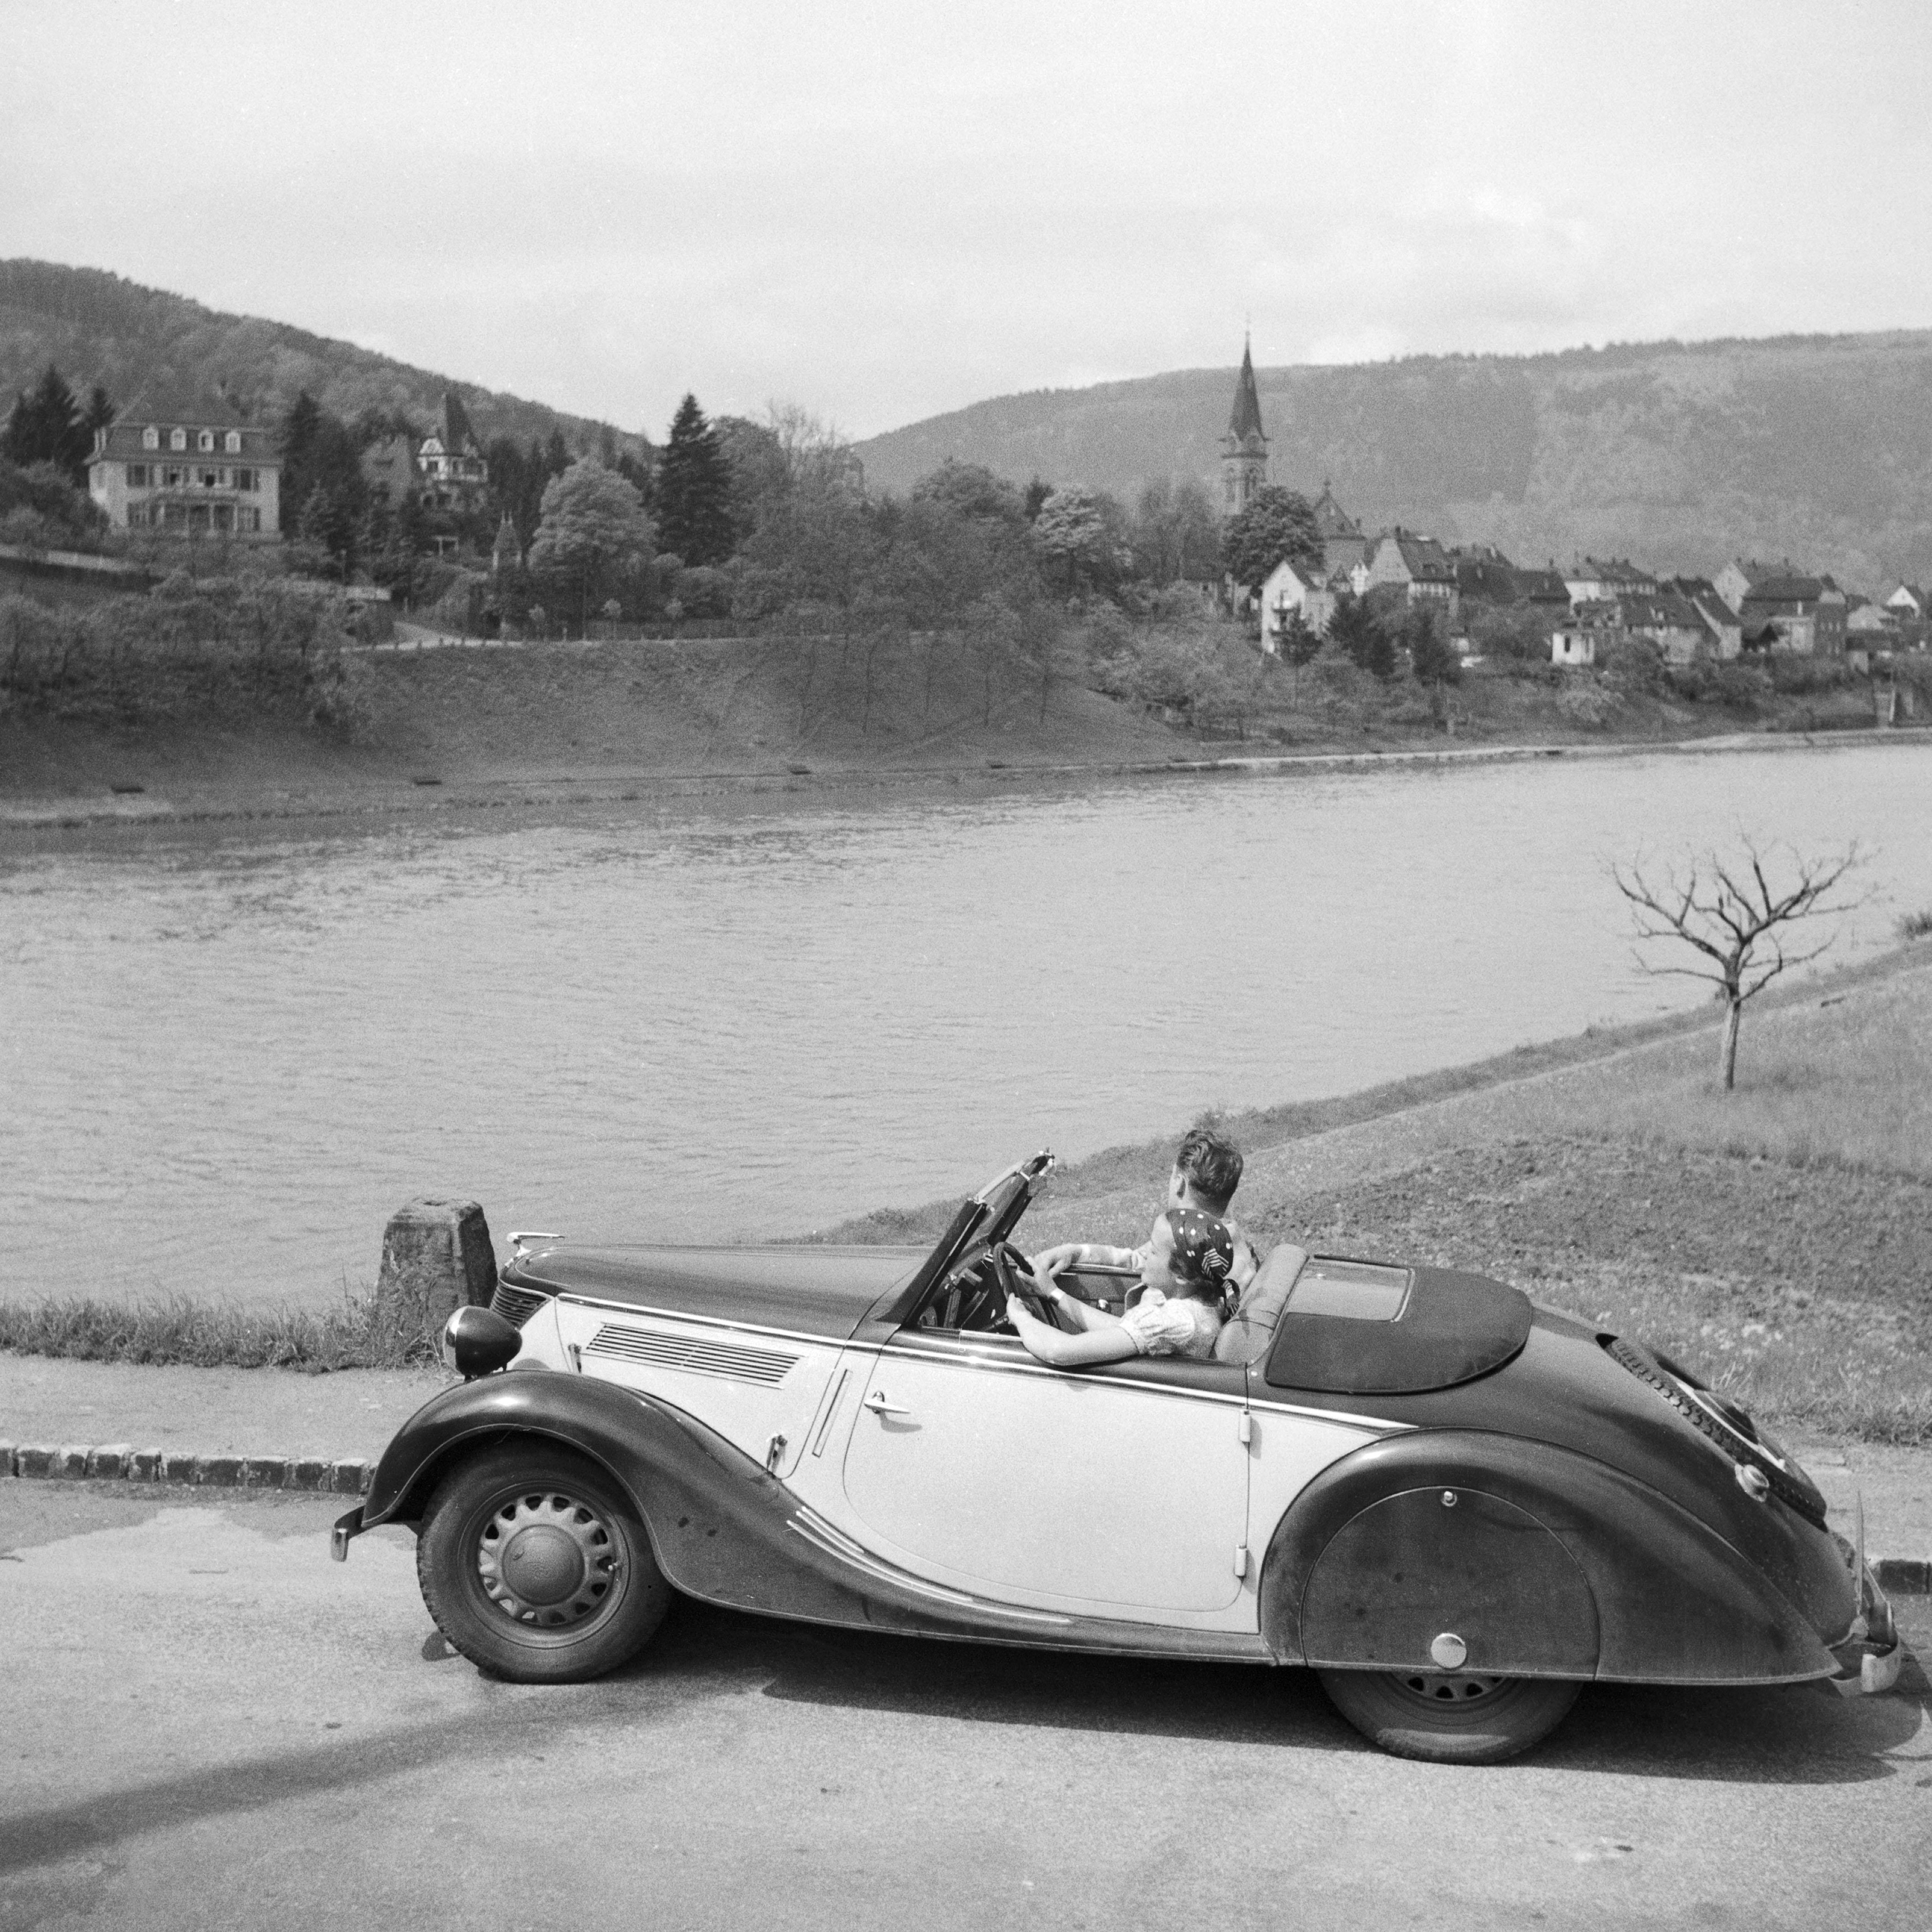 Black and White Photograph Karl Heinrich Lämmel - Giong à Neckargemuend par voiture près de Heidelberg, Allemagne 1936, imprimé plus tard 